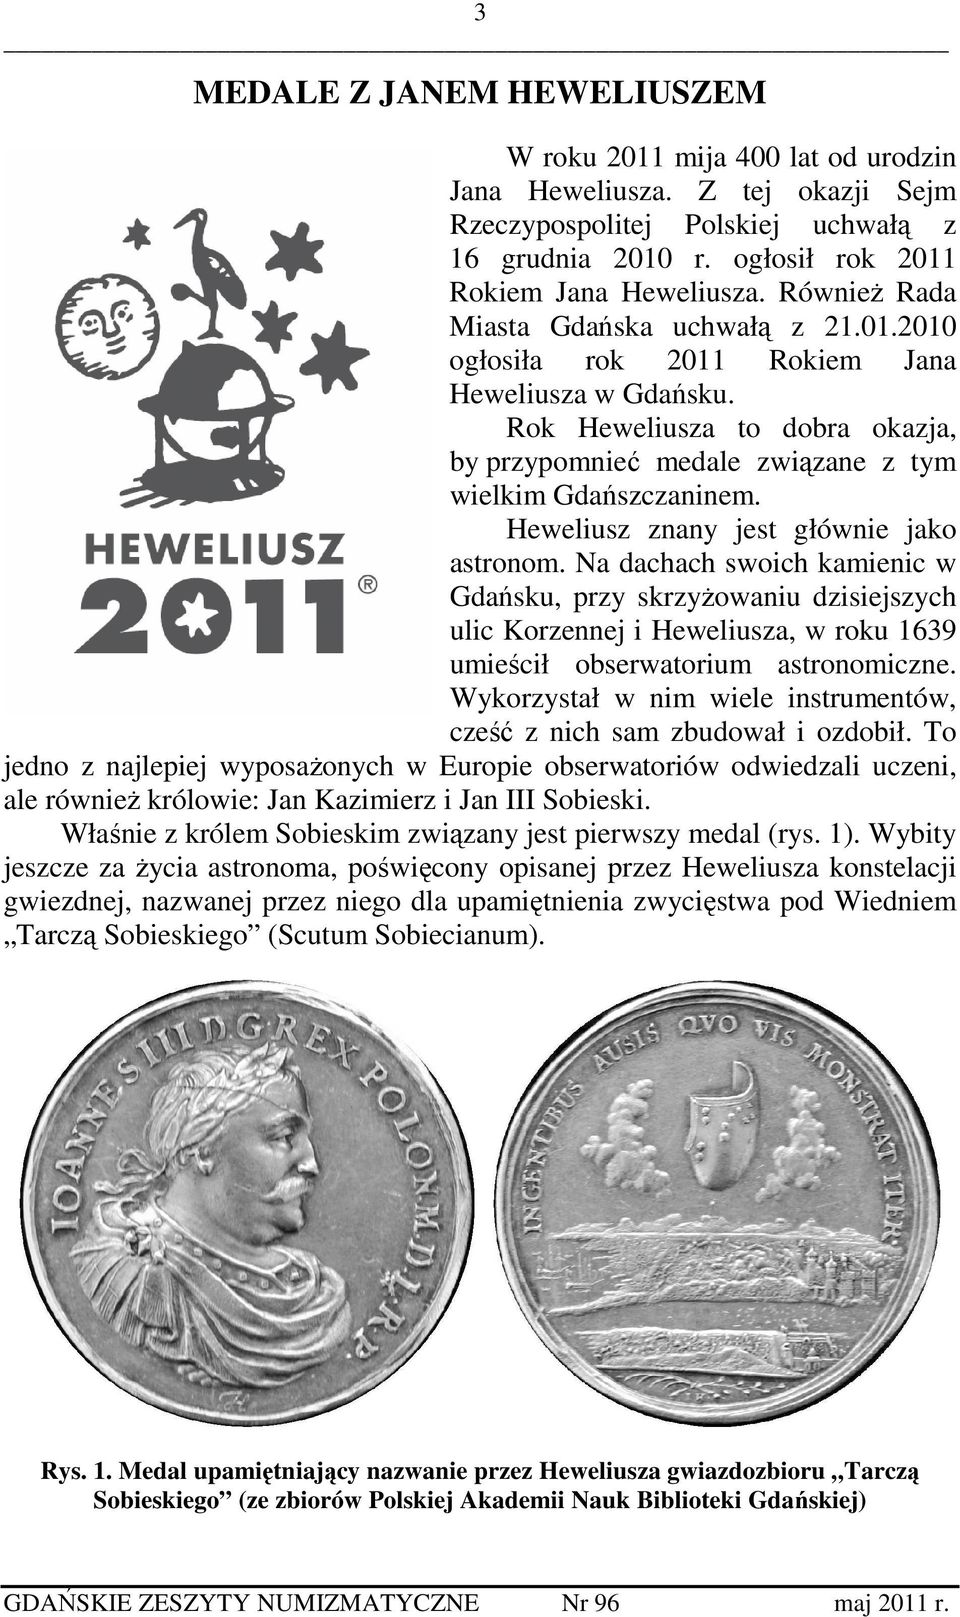 Heweliusz znany jest głównie jako astronom. Na dachach swoich kamienic w Gdańsku, przy skrzyżowaniu dzisiejszych ulic Korzennej i Heweliusza, w roku 1639 umieścił obserwatorium astronomiczne.